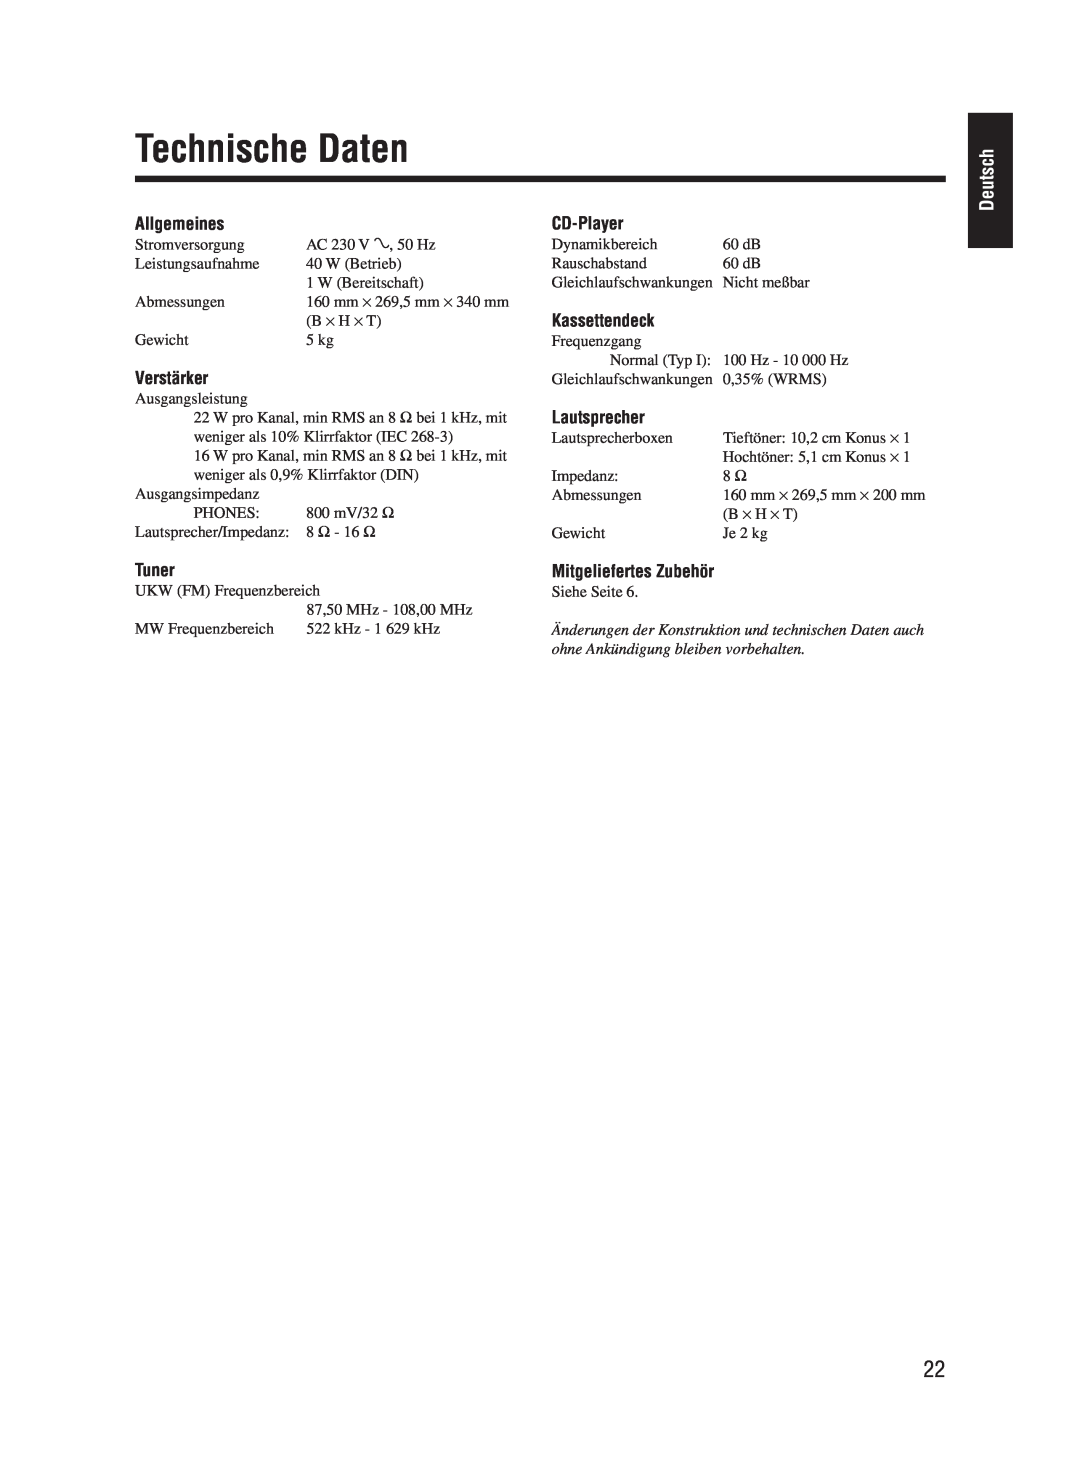 JVC UX-M55 manual Technische Daten, Deutsch, Allgemeines, Verstärker, CD-Player, Kassettendeck, Lautsprecher, Tuner 